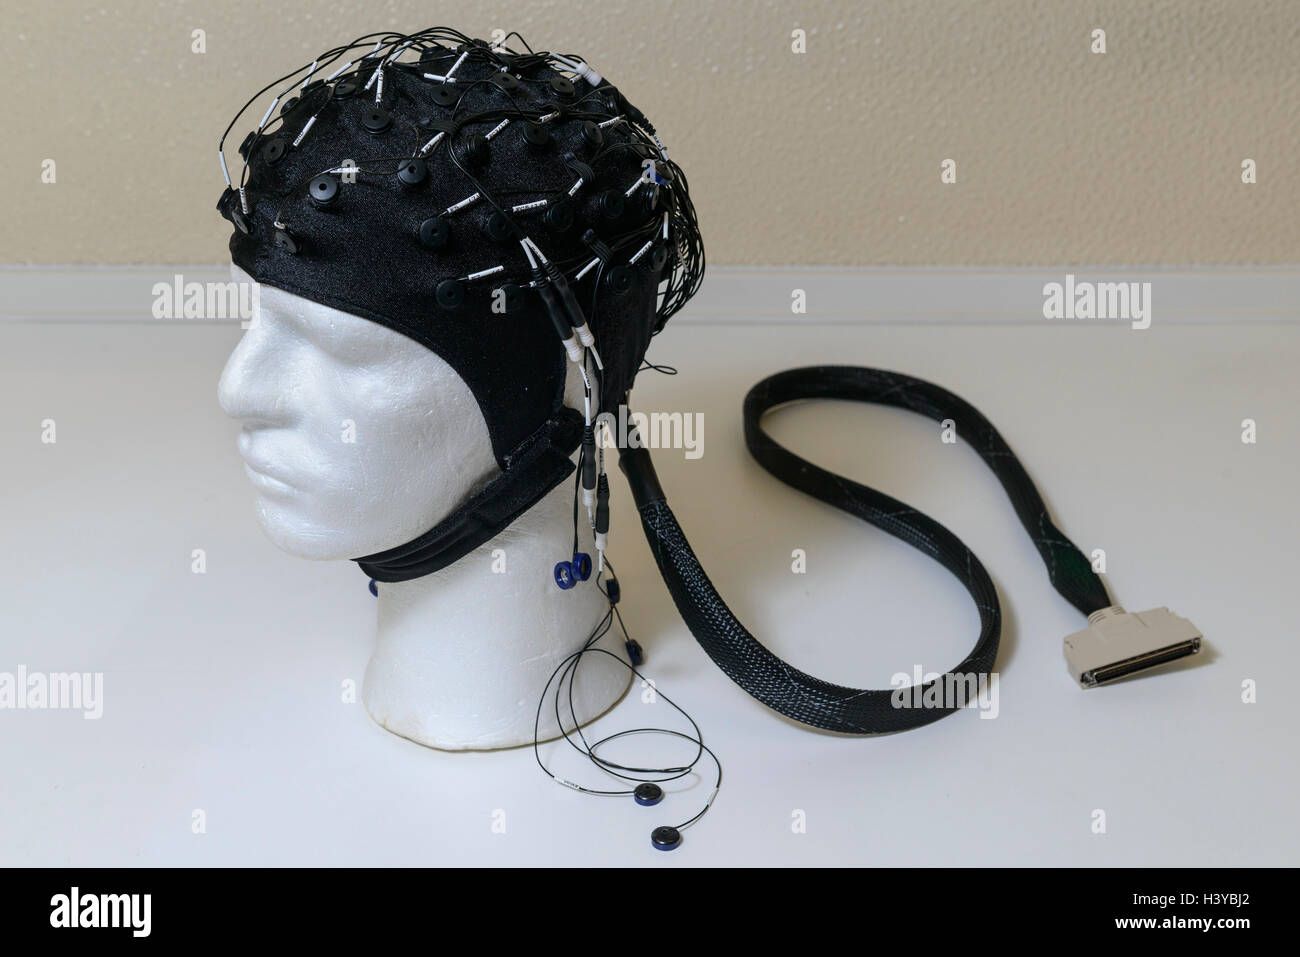 Électroencéphalogramme EEG cap sur un mannequin head Banque D'Images